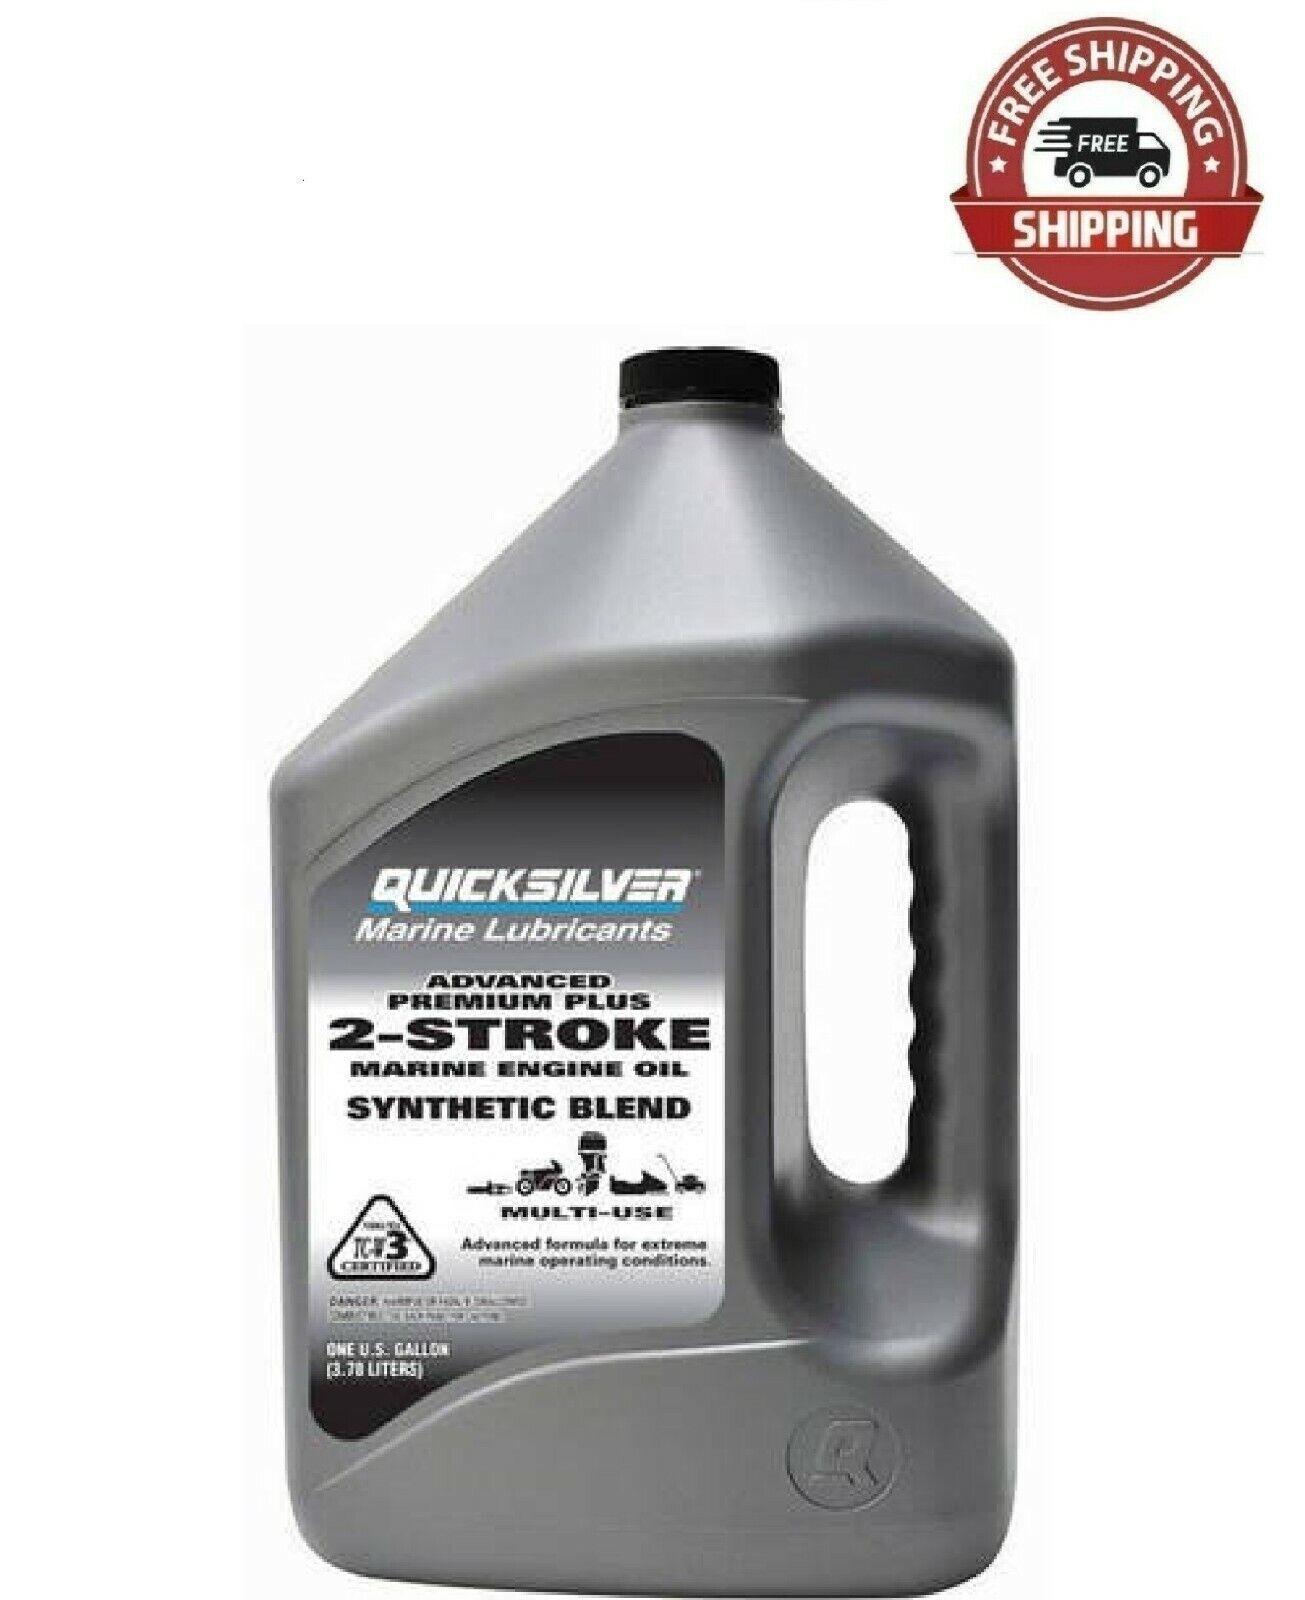 Quicksilver Premium plus 2-Stroke Synthetic Blend Marine Oil - 1 Gallon, New